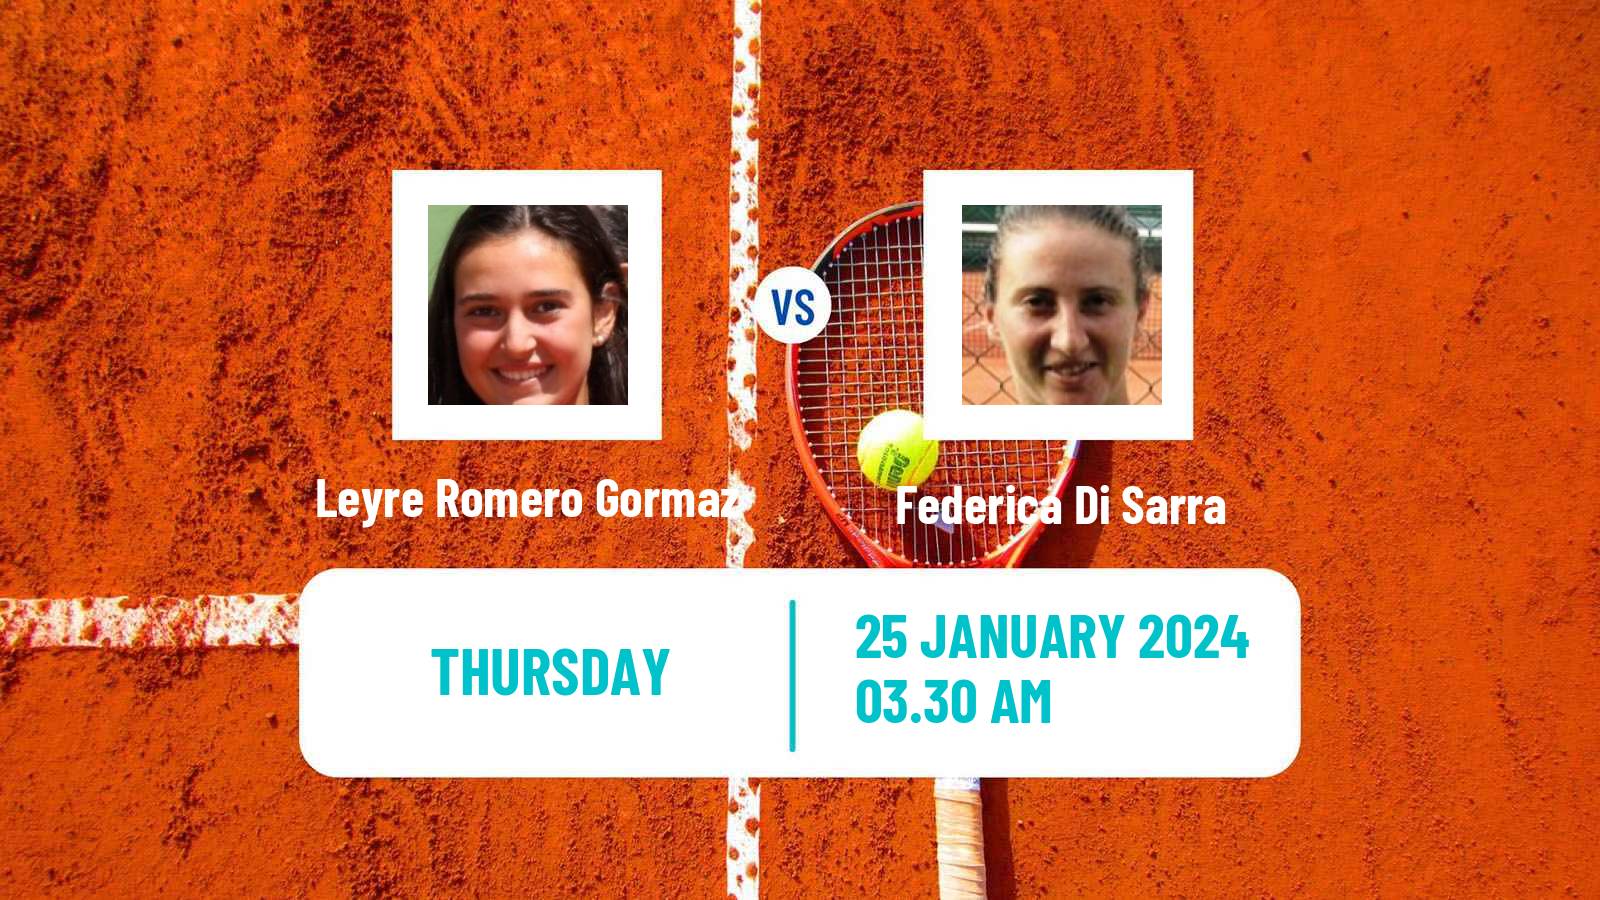 Tennis ITF W35 Monastir 2 Women Leyre Romero Gormaz - Federica Di Sarra